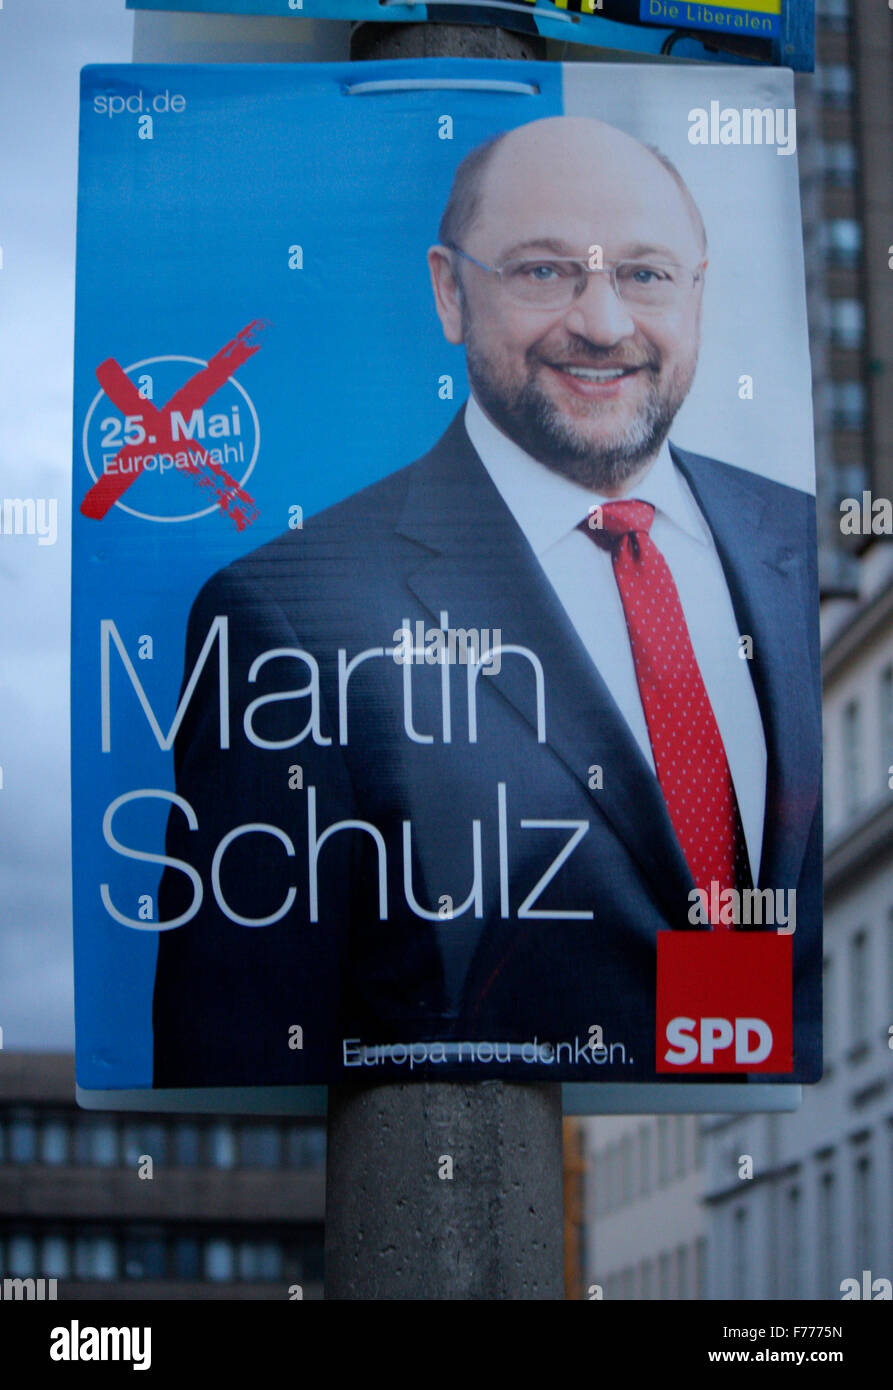 Martin Schulz, SPD - Wahlplakate zur anstehenden Europawahl, Berlin. Stock Photo